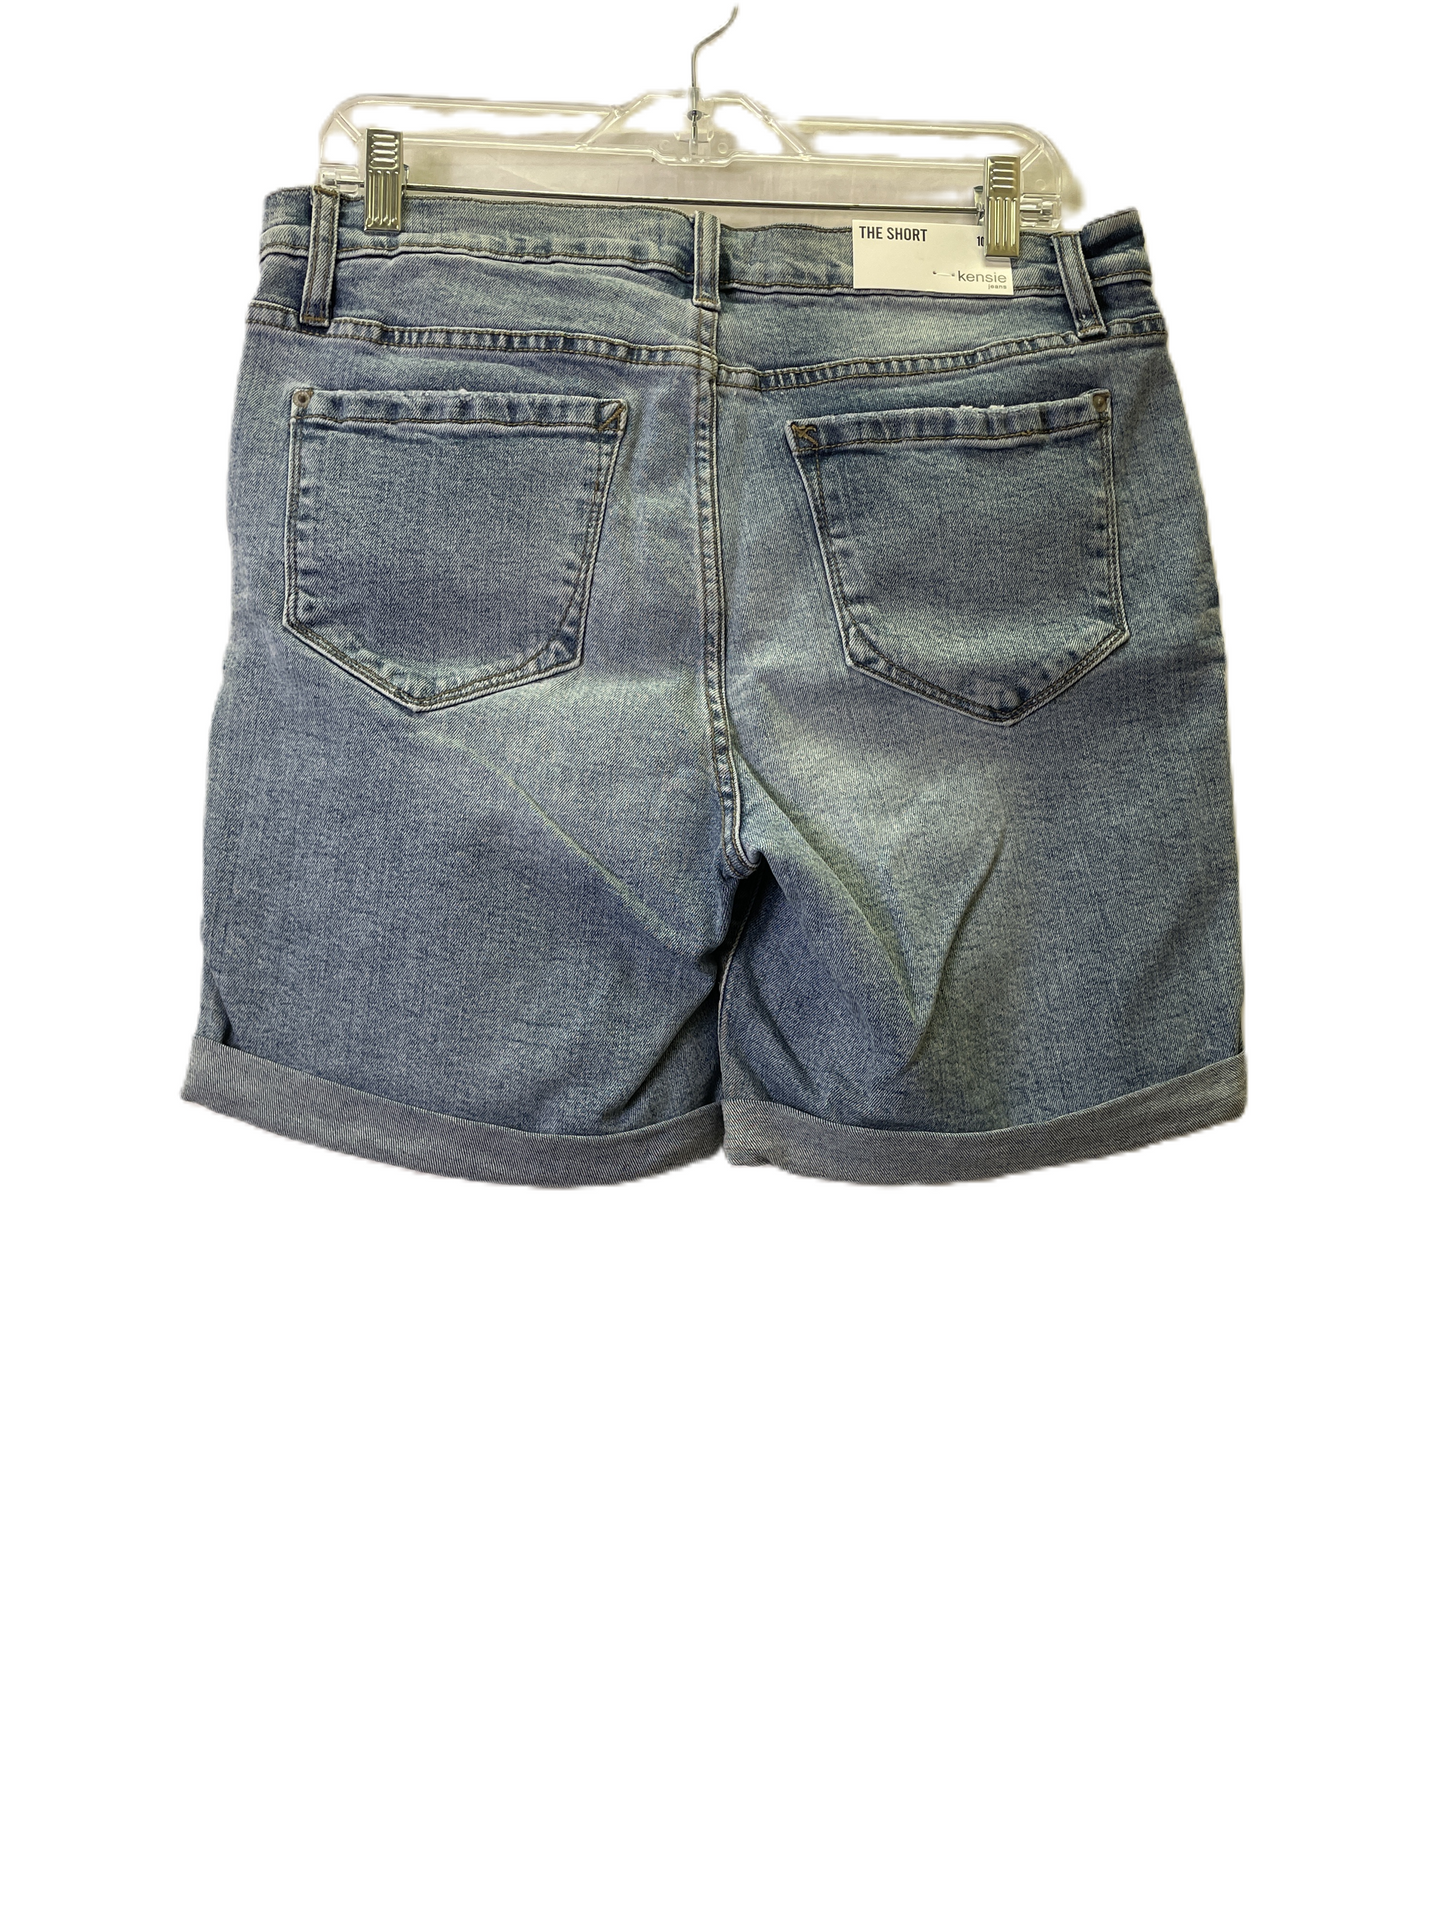 Blue Denim Shorts By Kensie, Size: 10